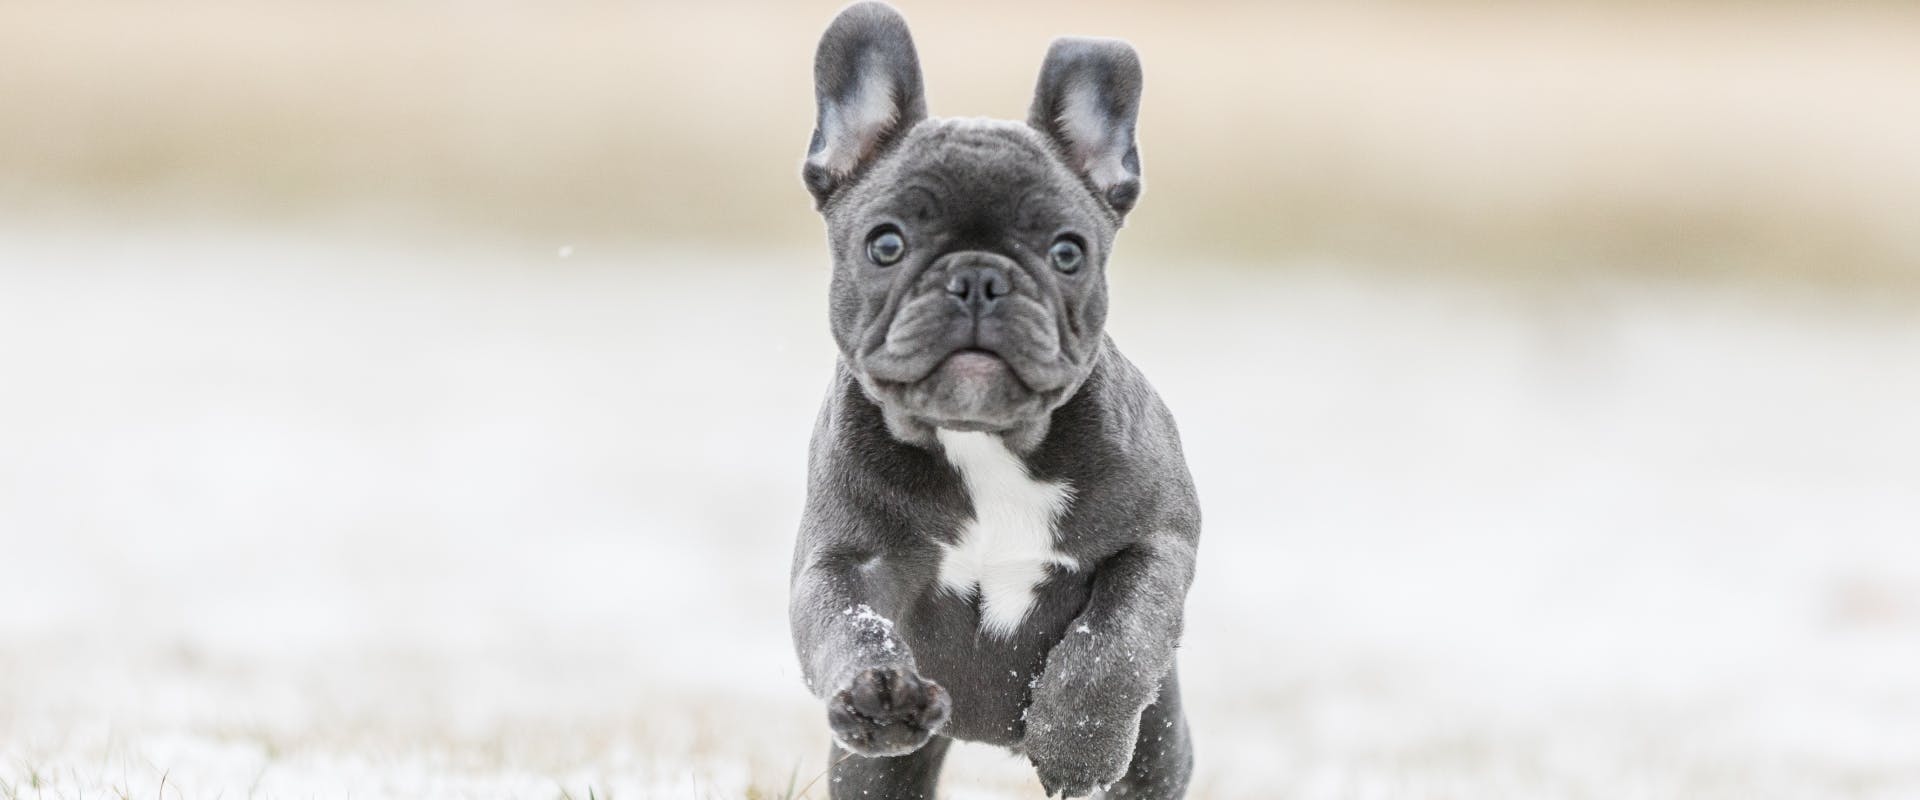 A puppy running.